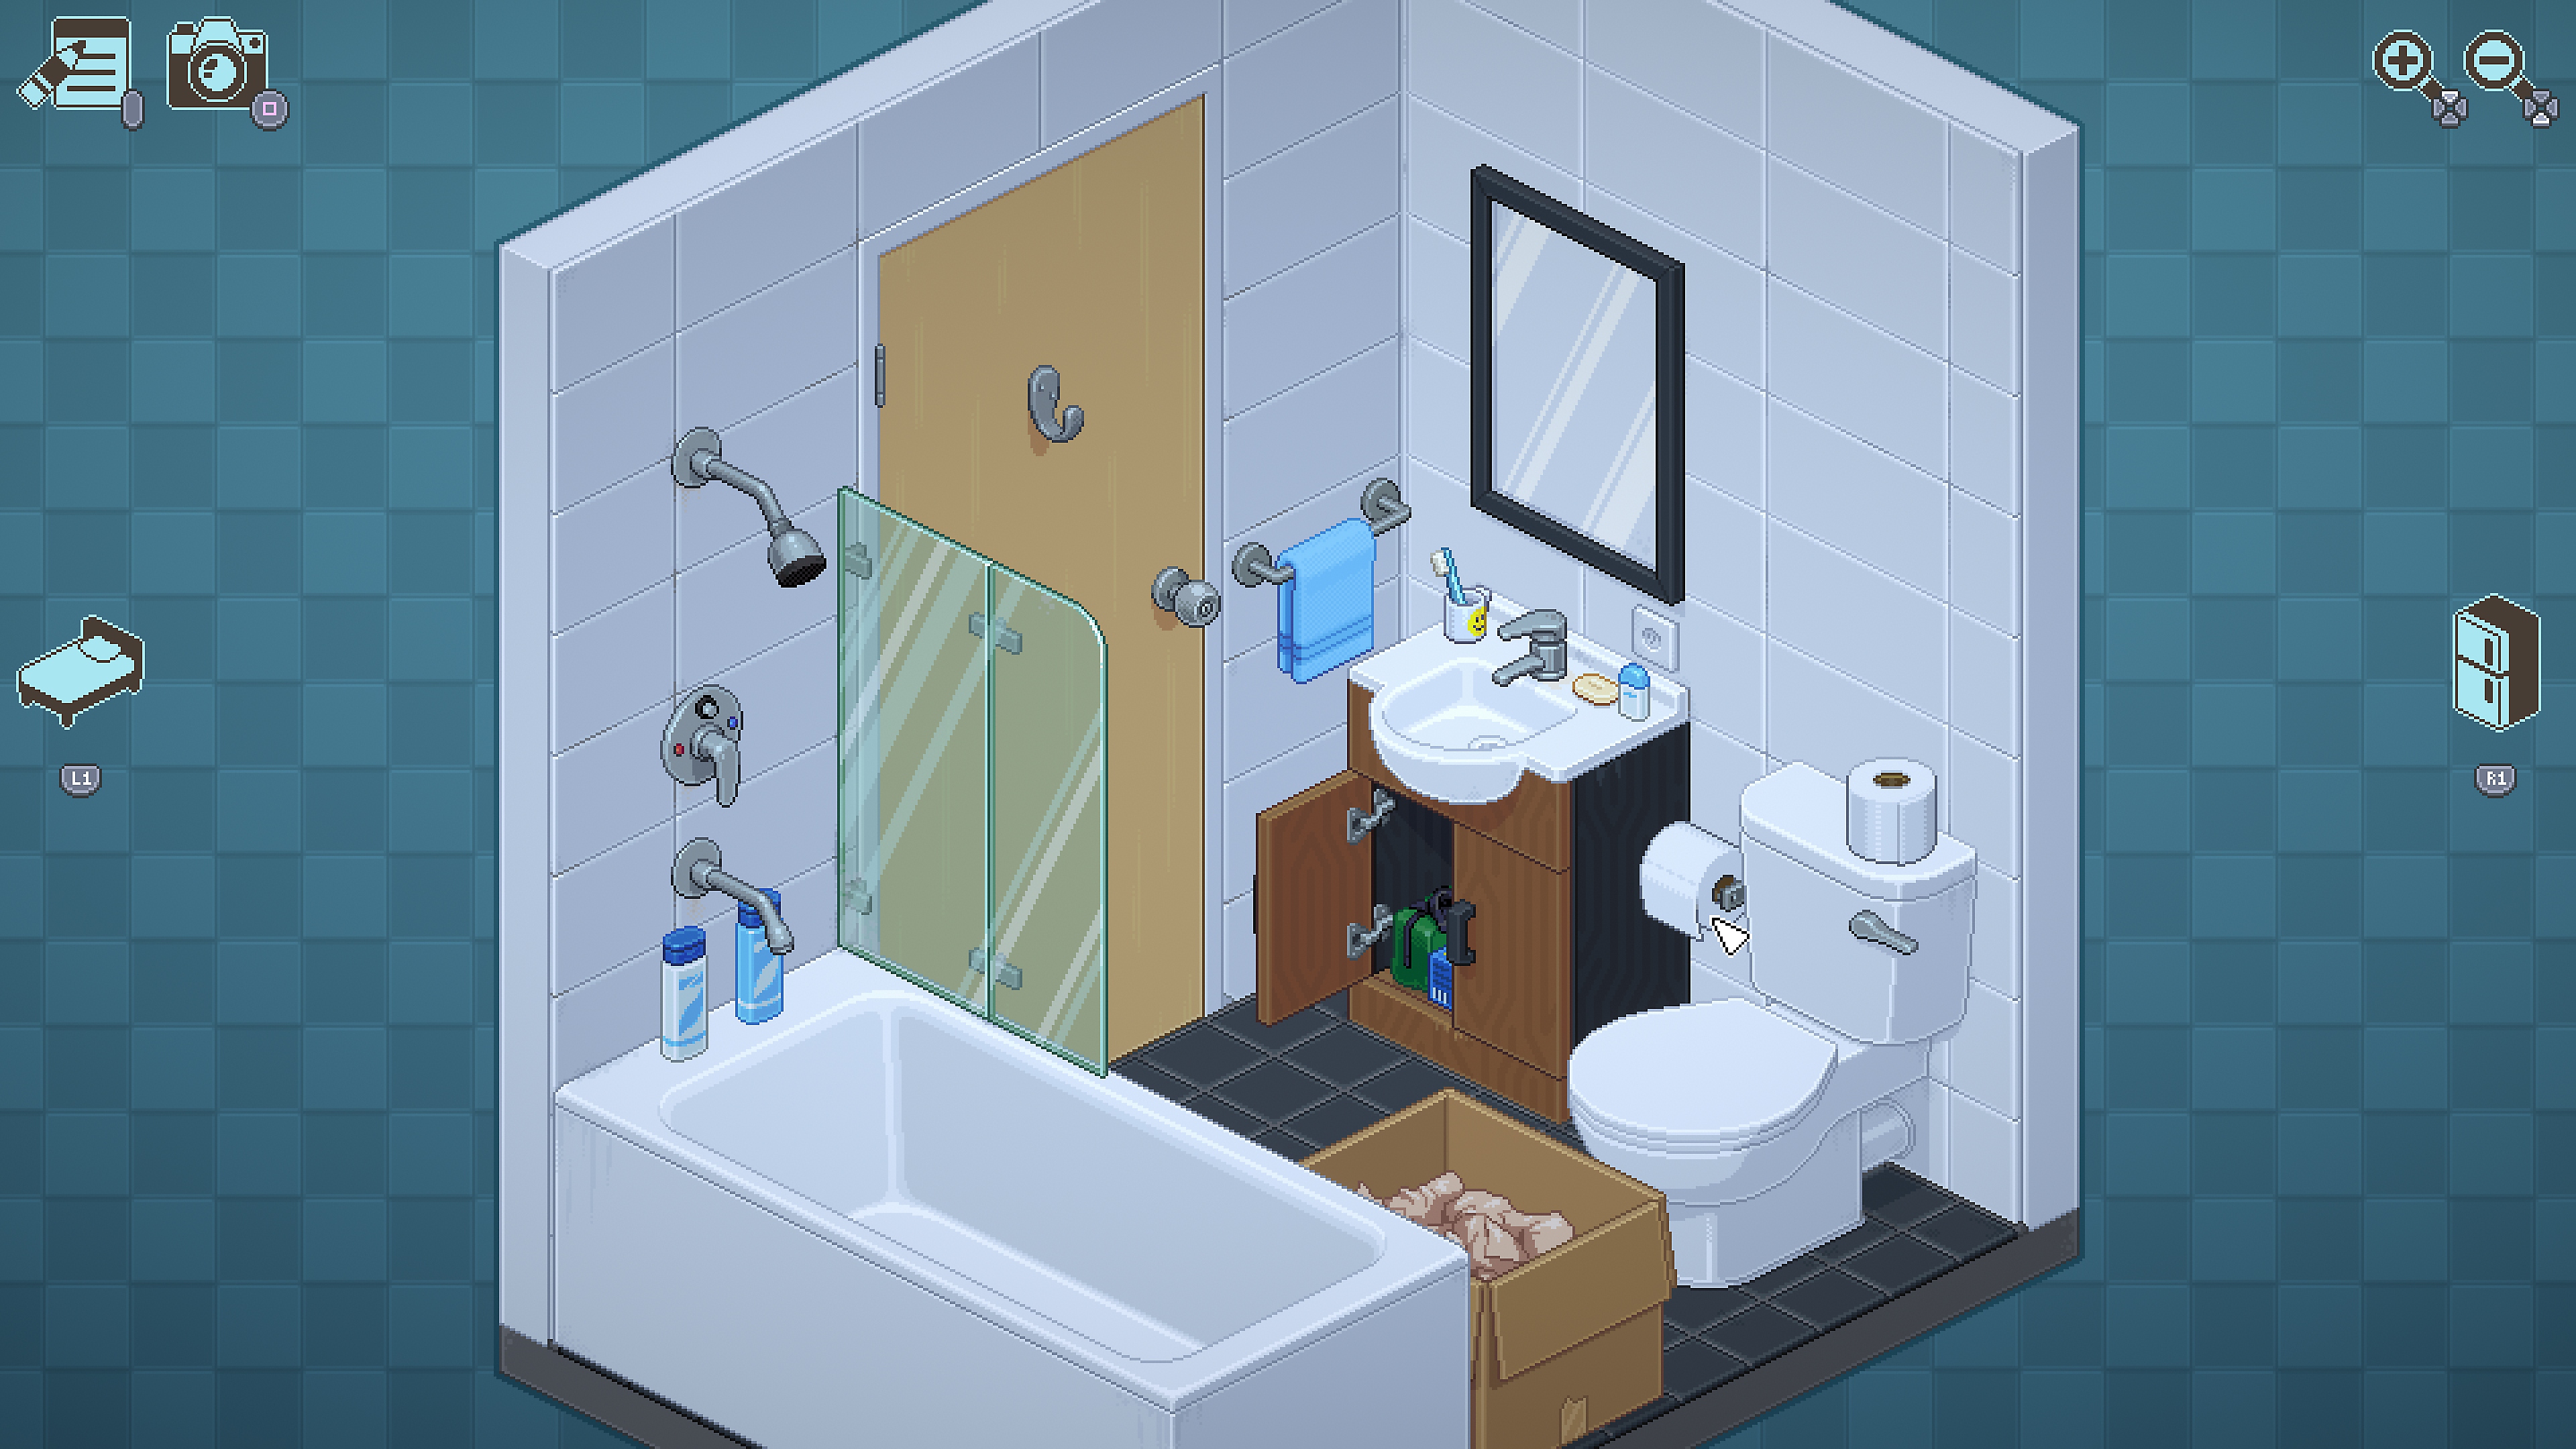 Unpacking - captura de tela mostrando cena do banheiro